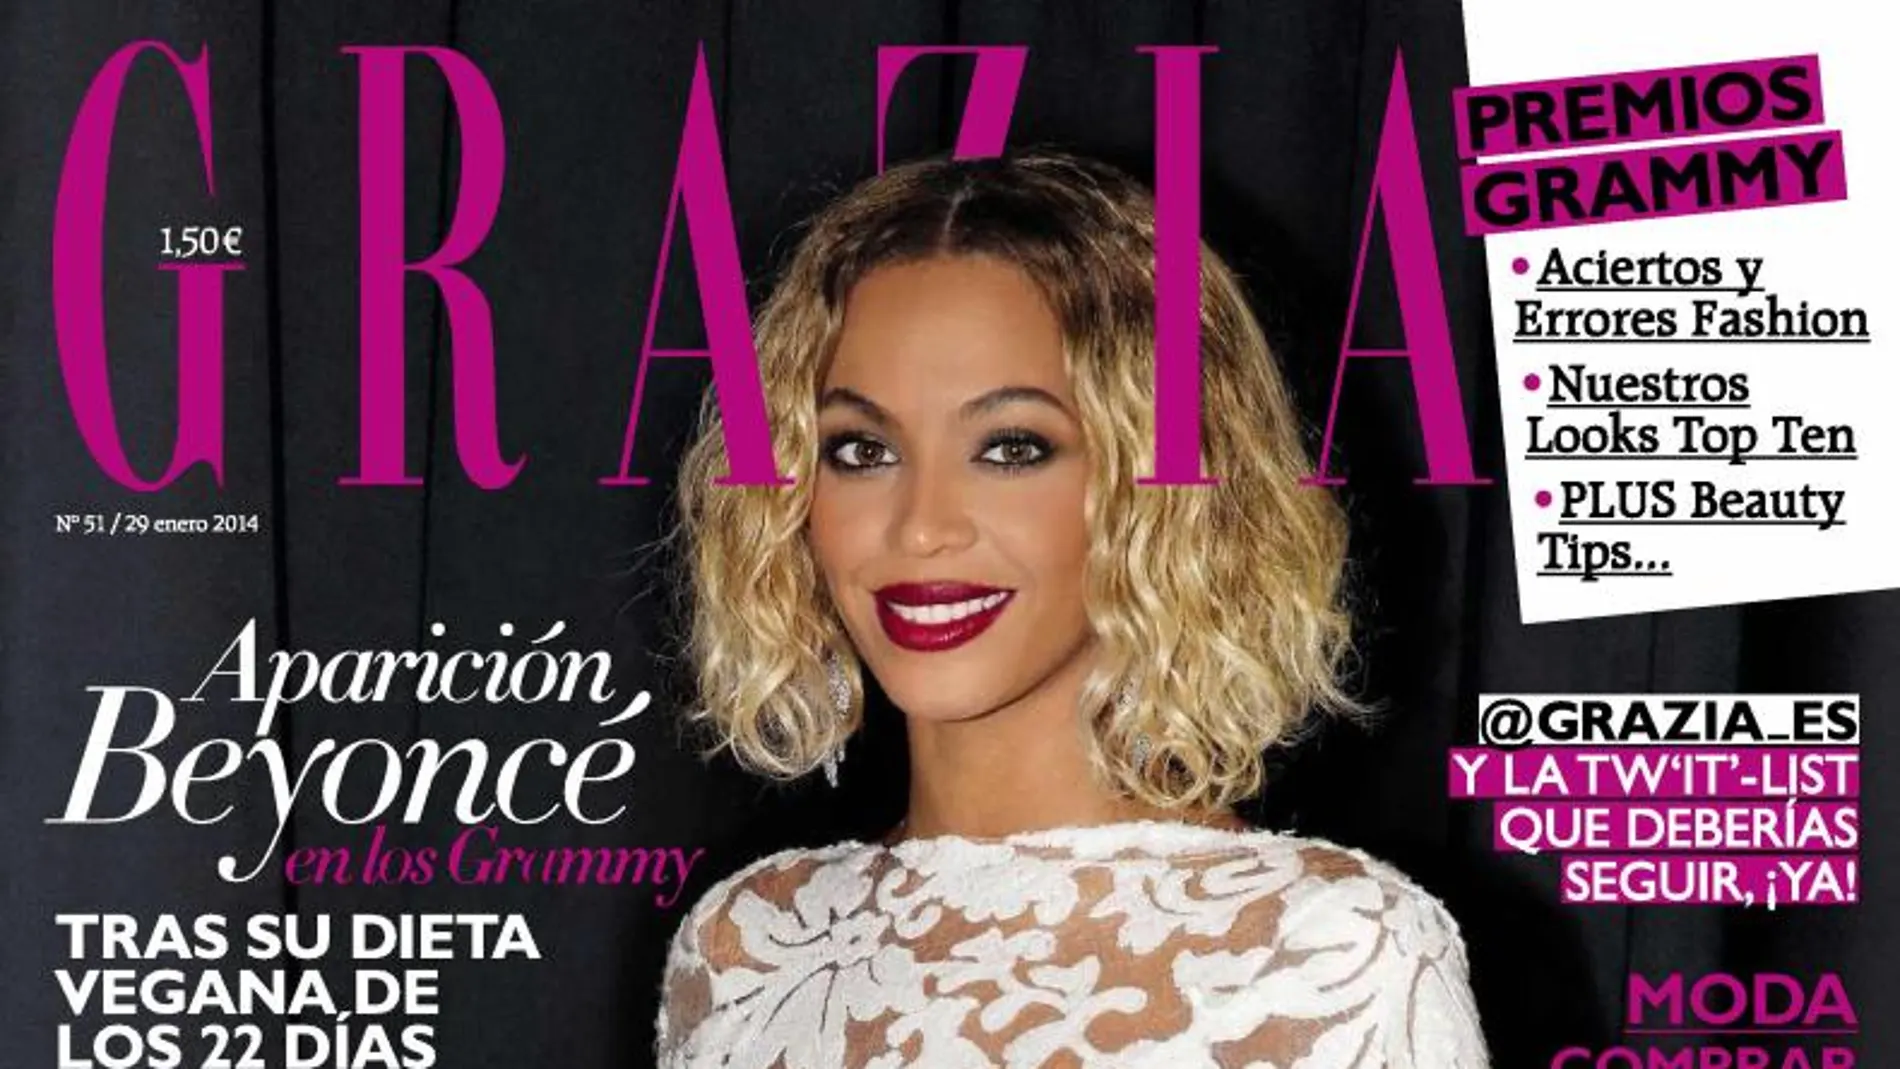 Beyoncé protagoniza la portada del último número de Grazia